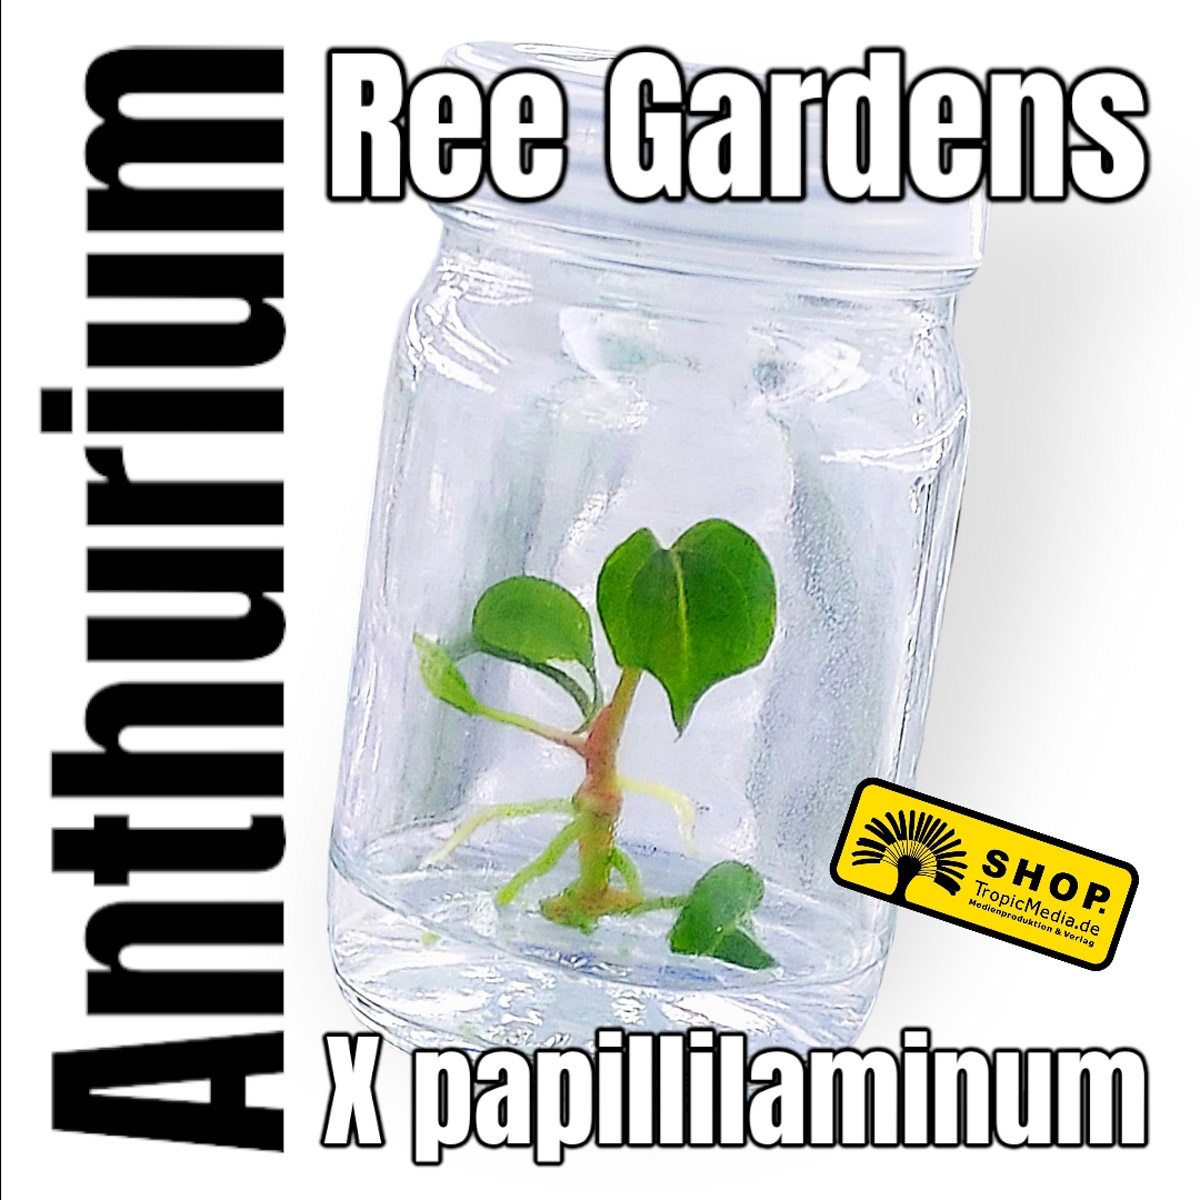 Anthurium x papillilaminum Ree Gardens Tissue Culture (TC)